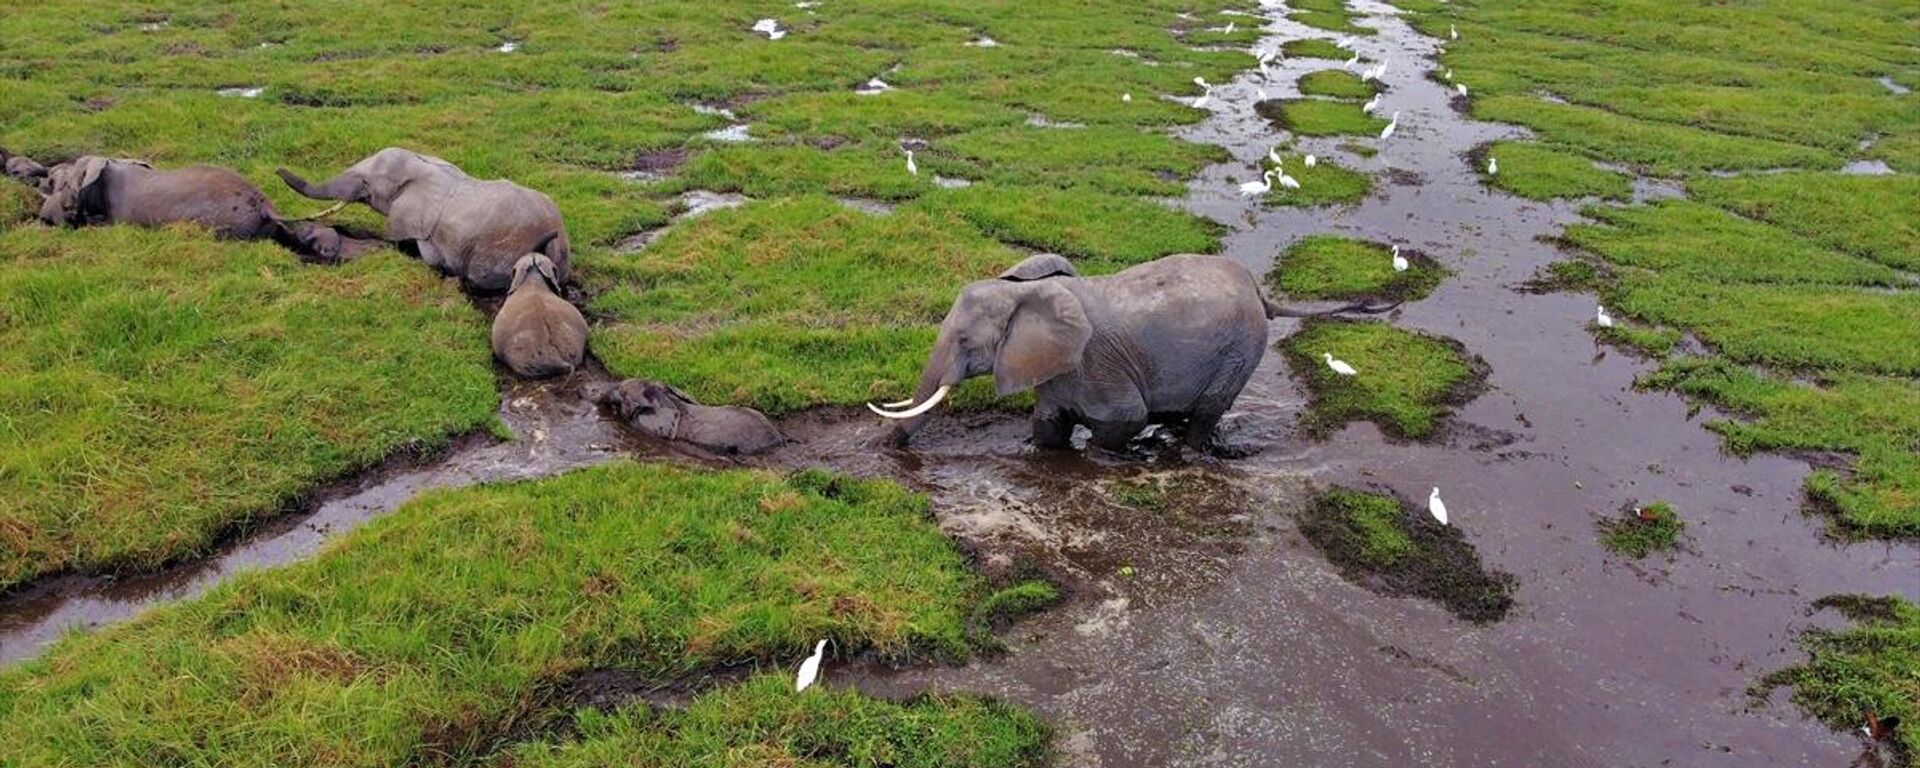 Kenya'daki Amboseli Ulusal Parkı fillerdeki doğum patlamasının sevincini yaşıyor. - Sputnik Türkiye, 1920, 10.10.2021